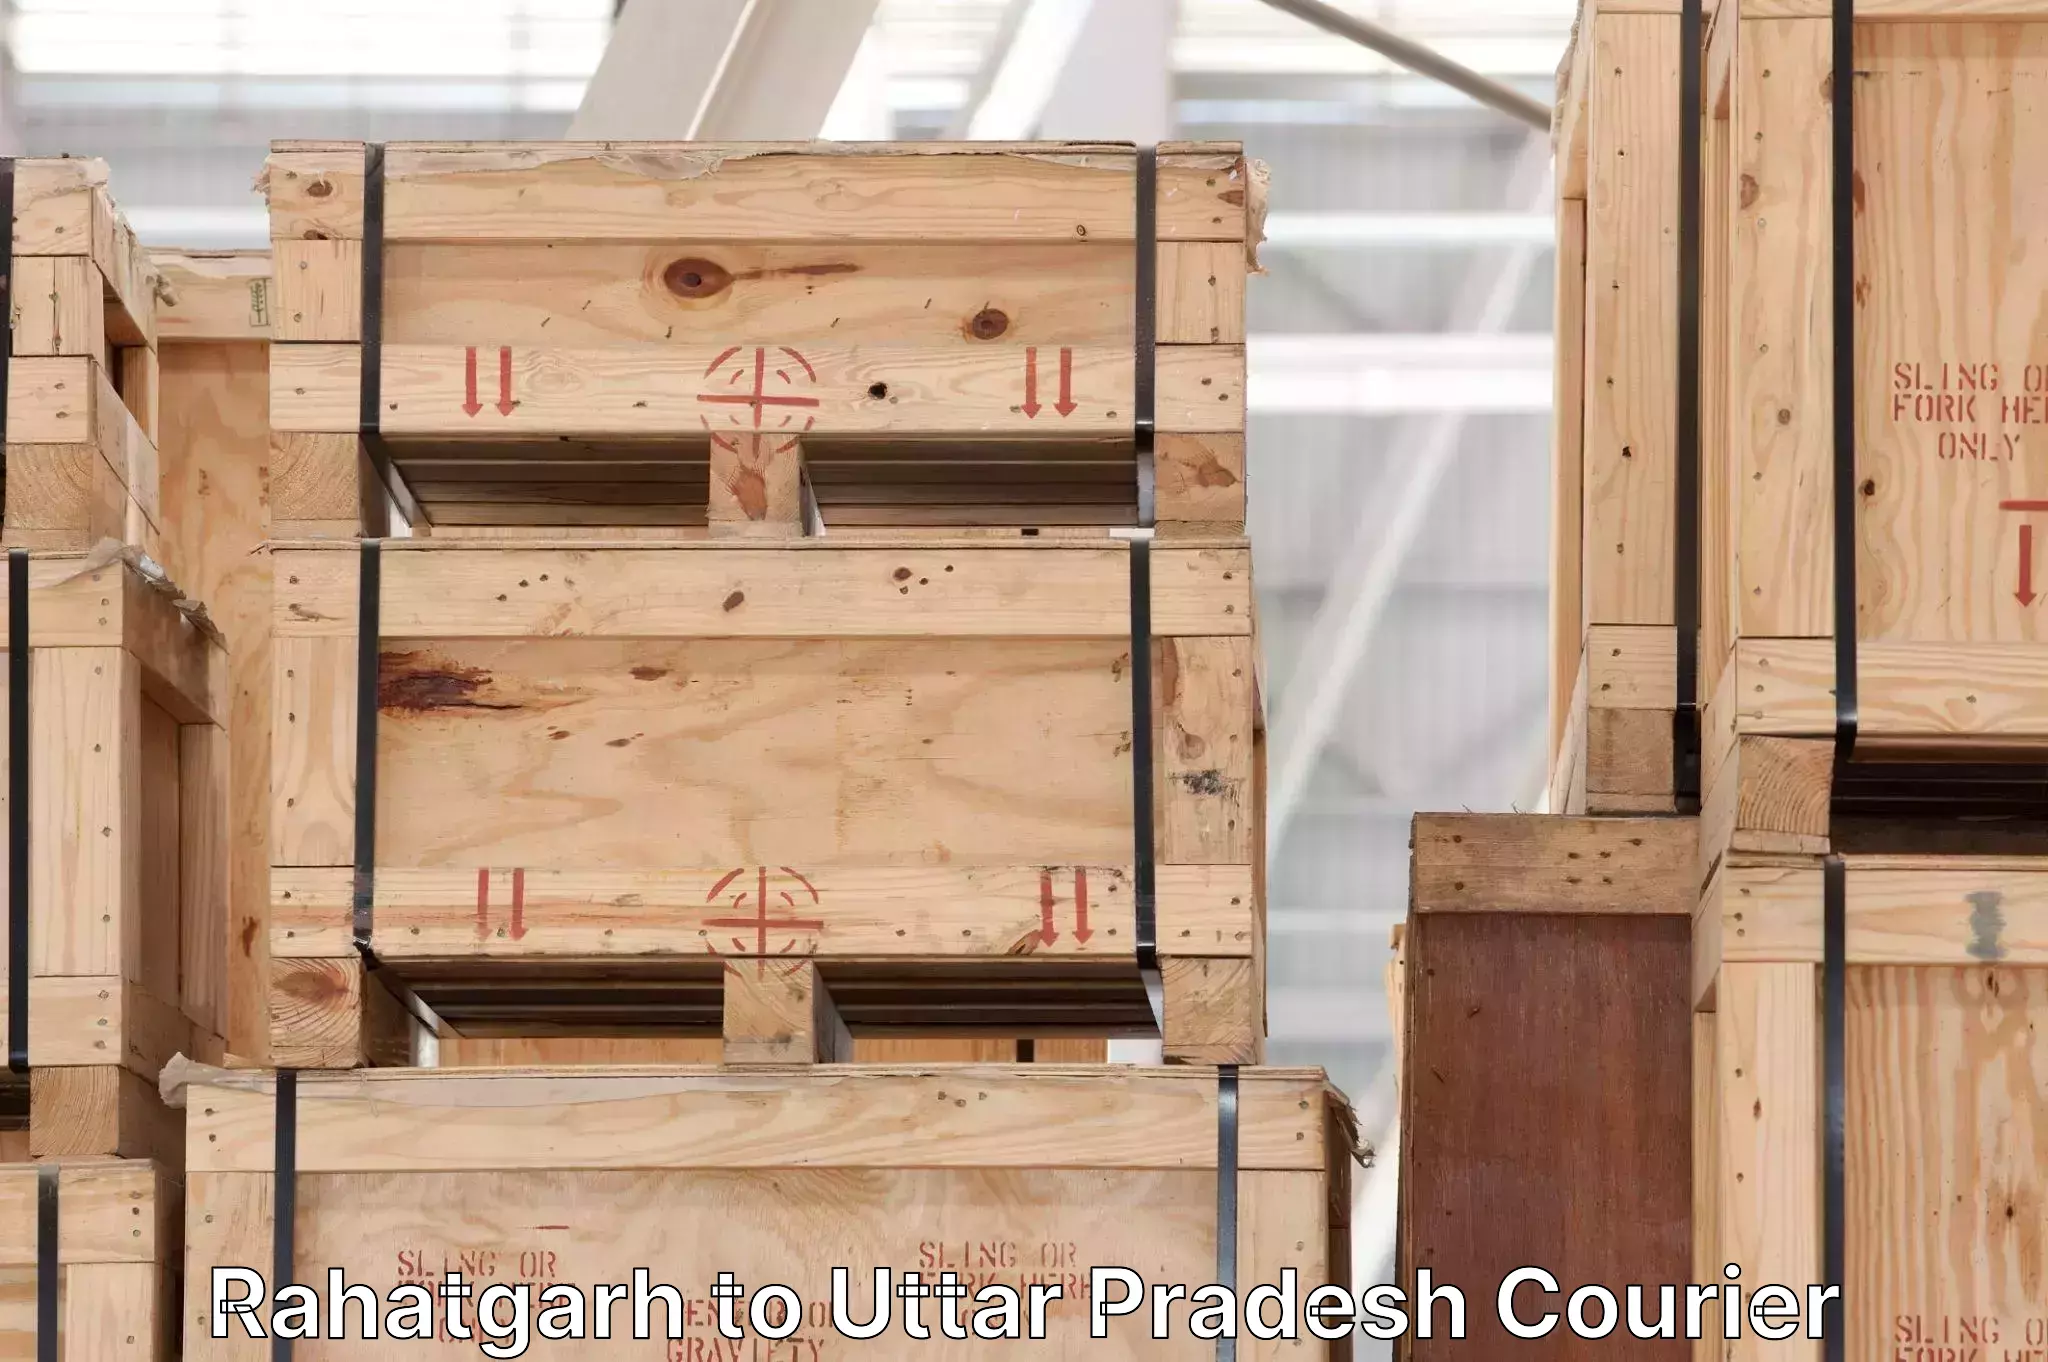 Next-day delivery options Rahatgarh to Uttar Pradesh